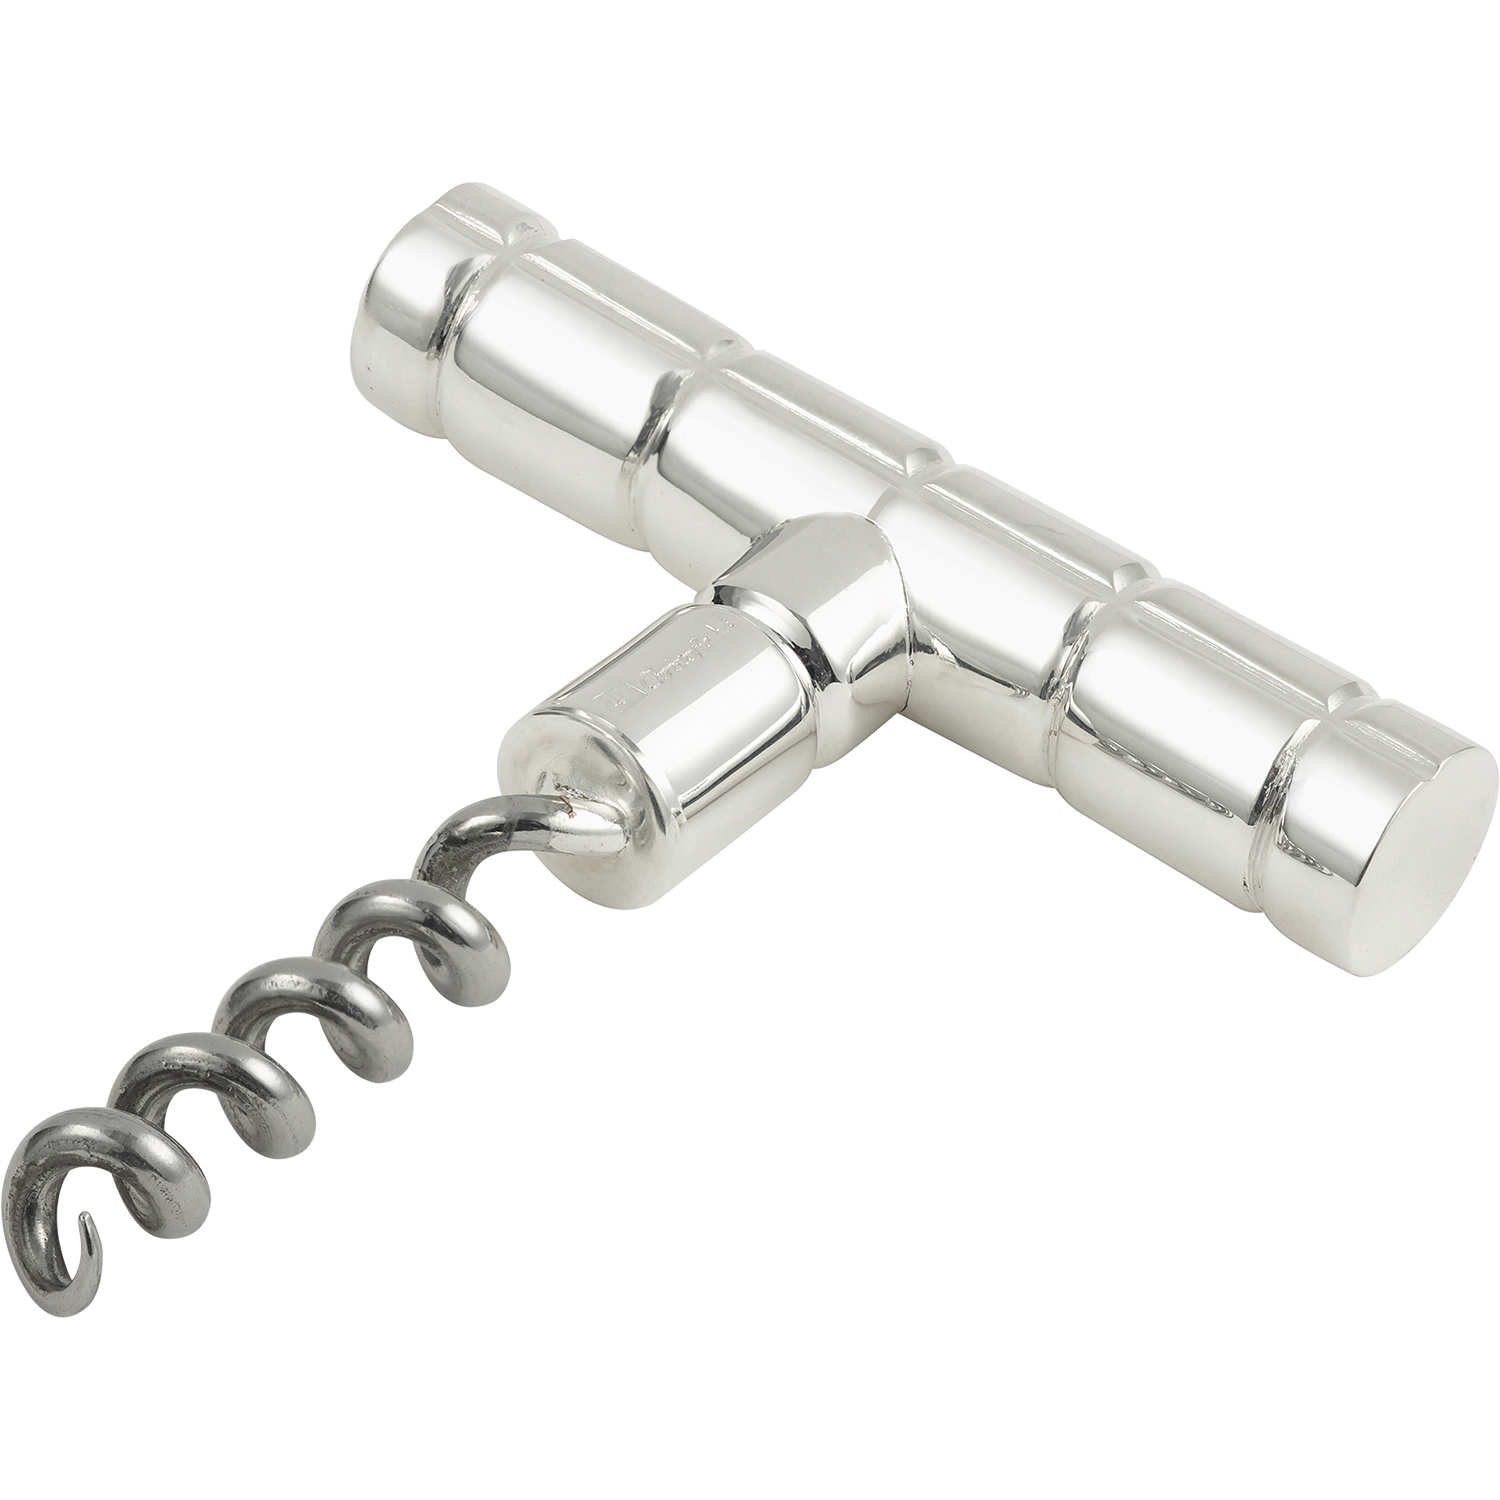 Silver corkscrew